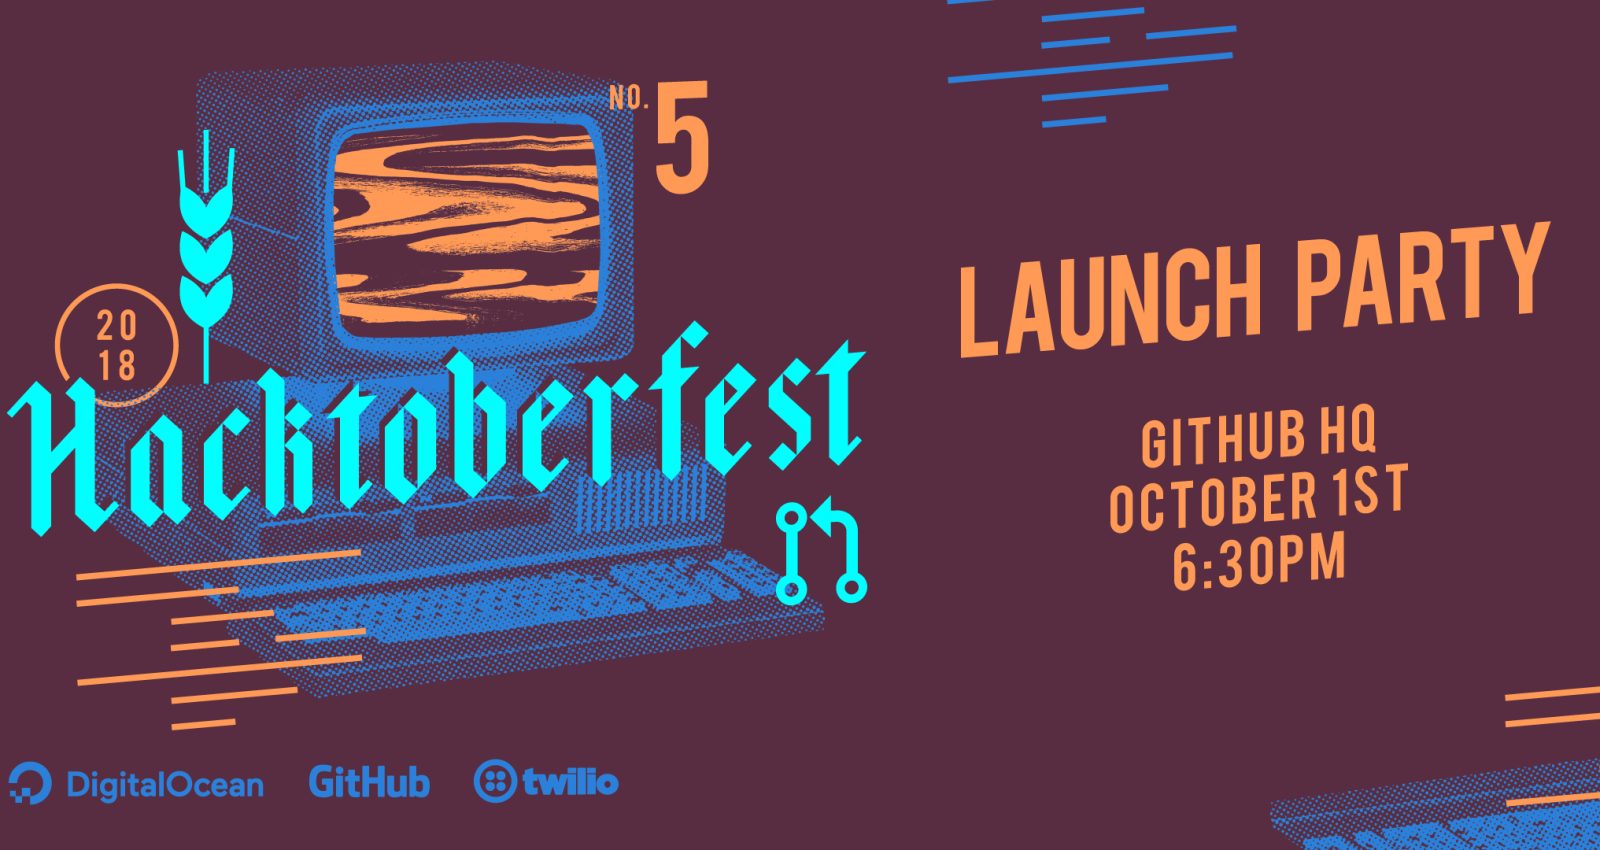 Hacktoberfest 2018 launch party